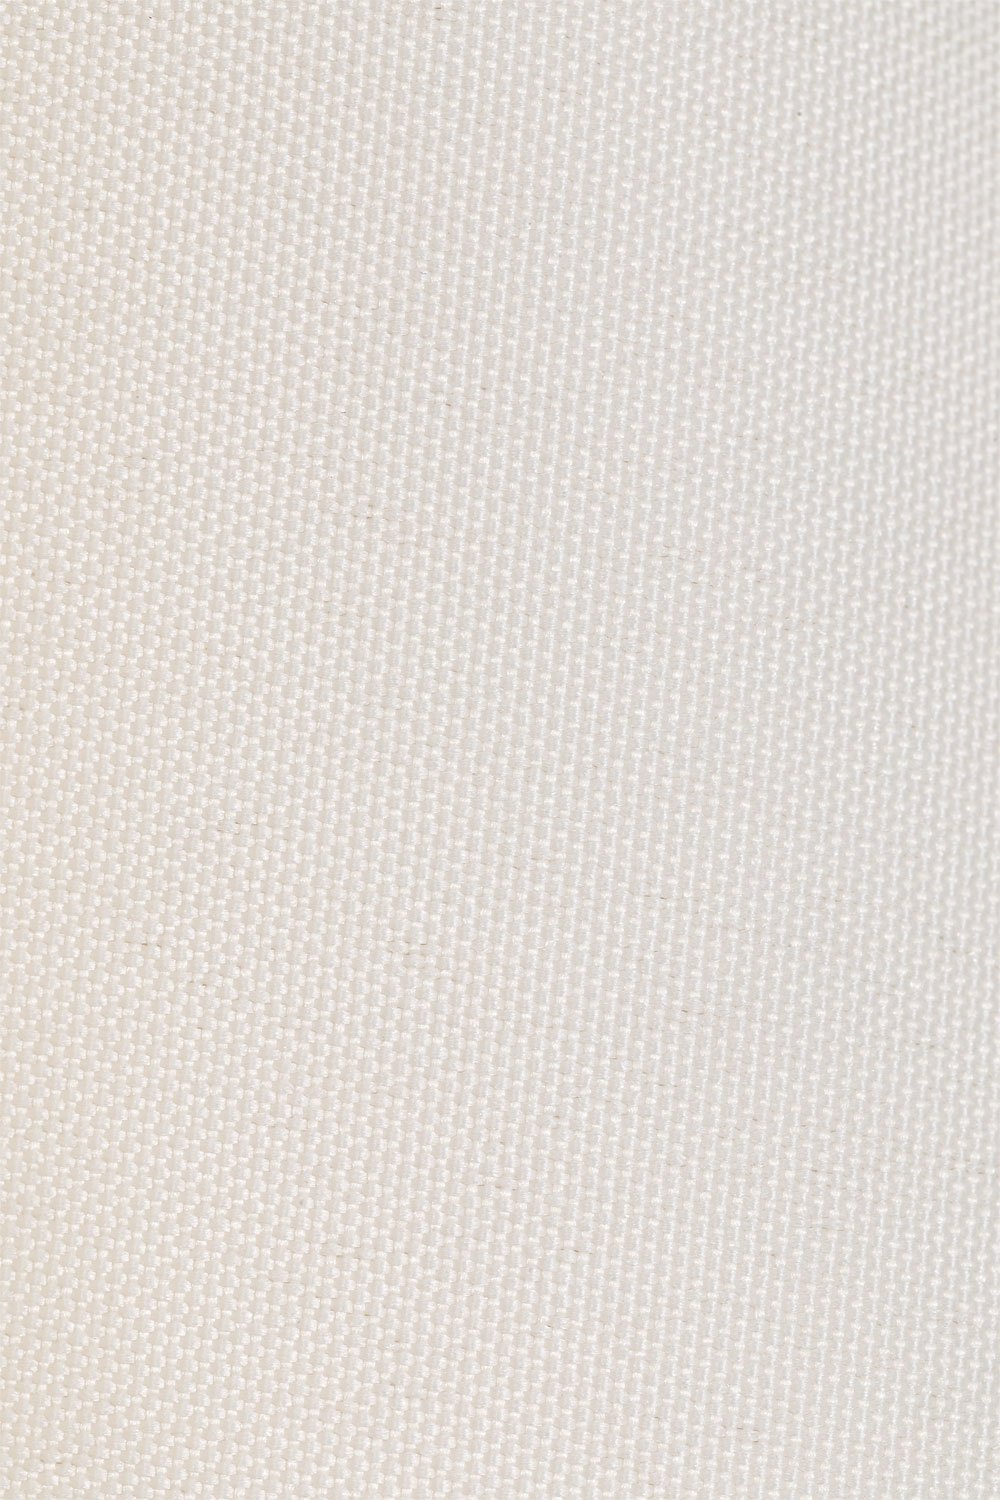 Sombrilla en Tela y Acero (Ø295 cm) Gerran Blanco Gardenia -  SKLUM